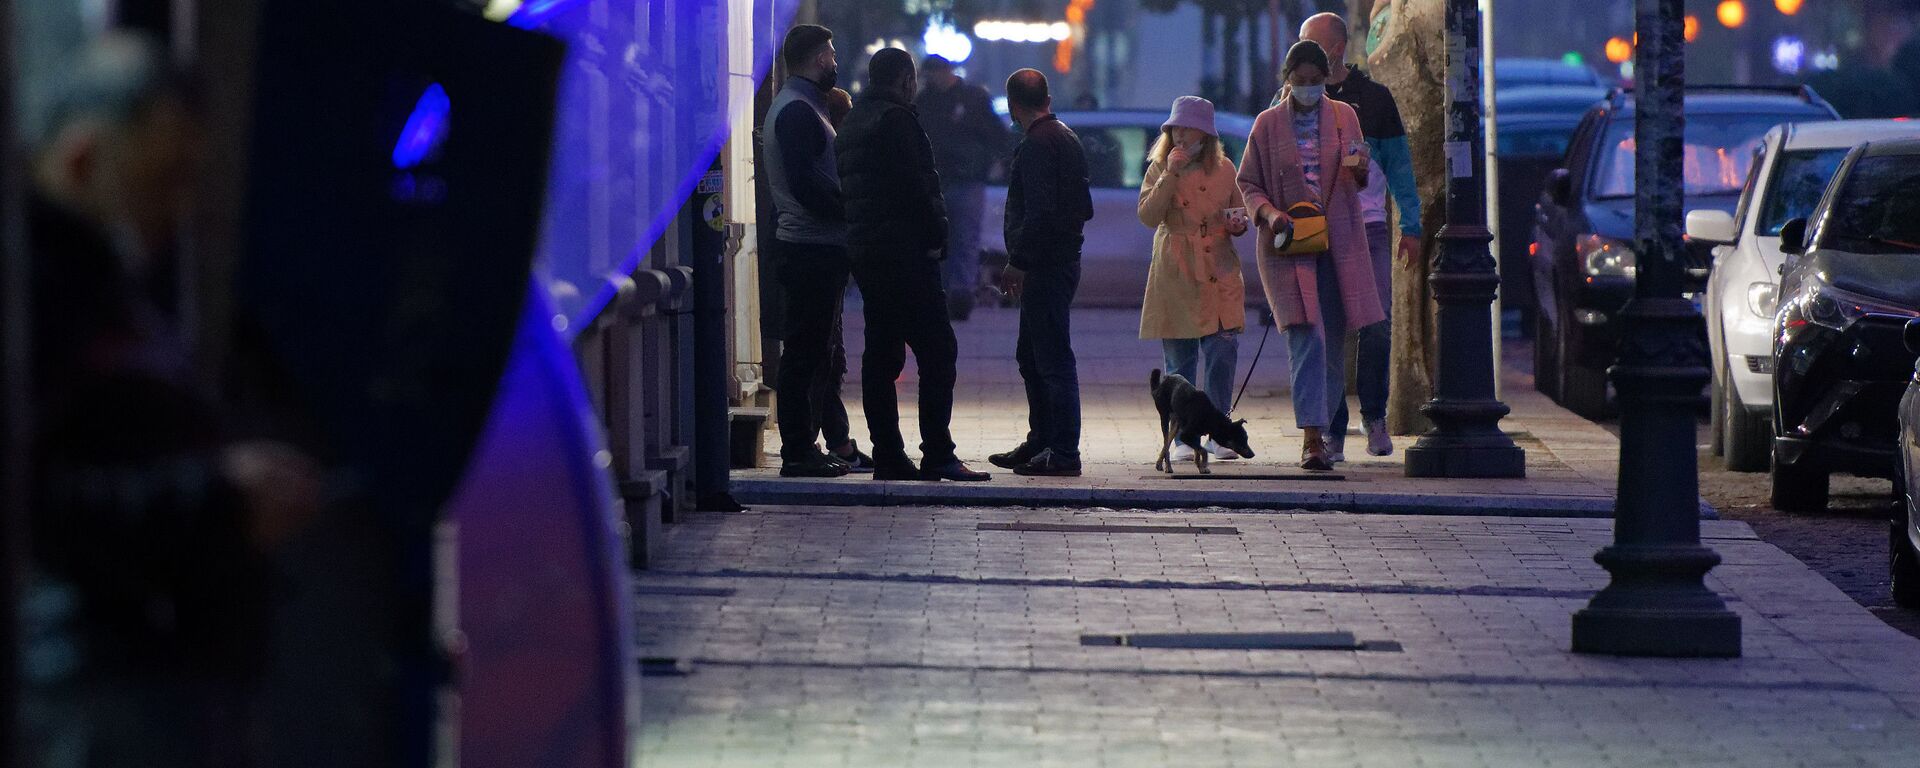 Эпидемия коронавируса - прохожие на улице гуляют вечером в масках - Sputnik Грузия, 1920, 05.05.2021